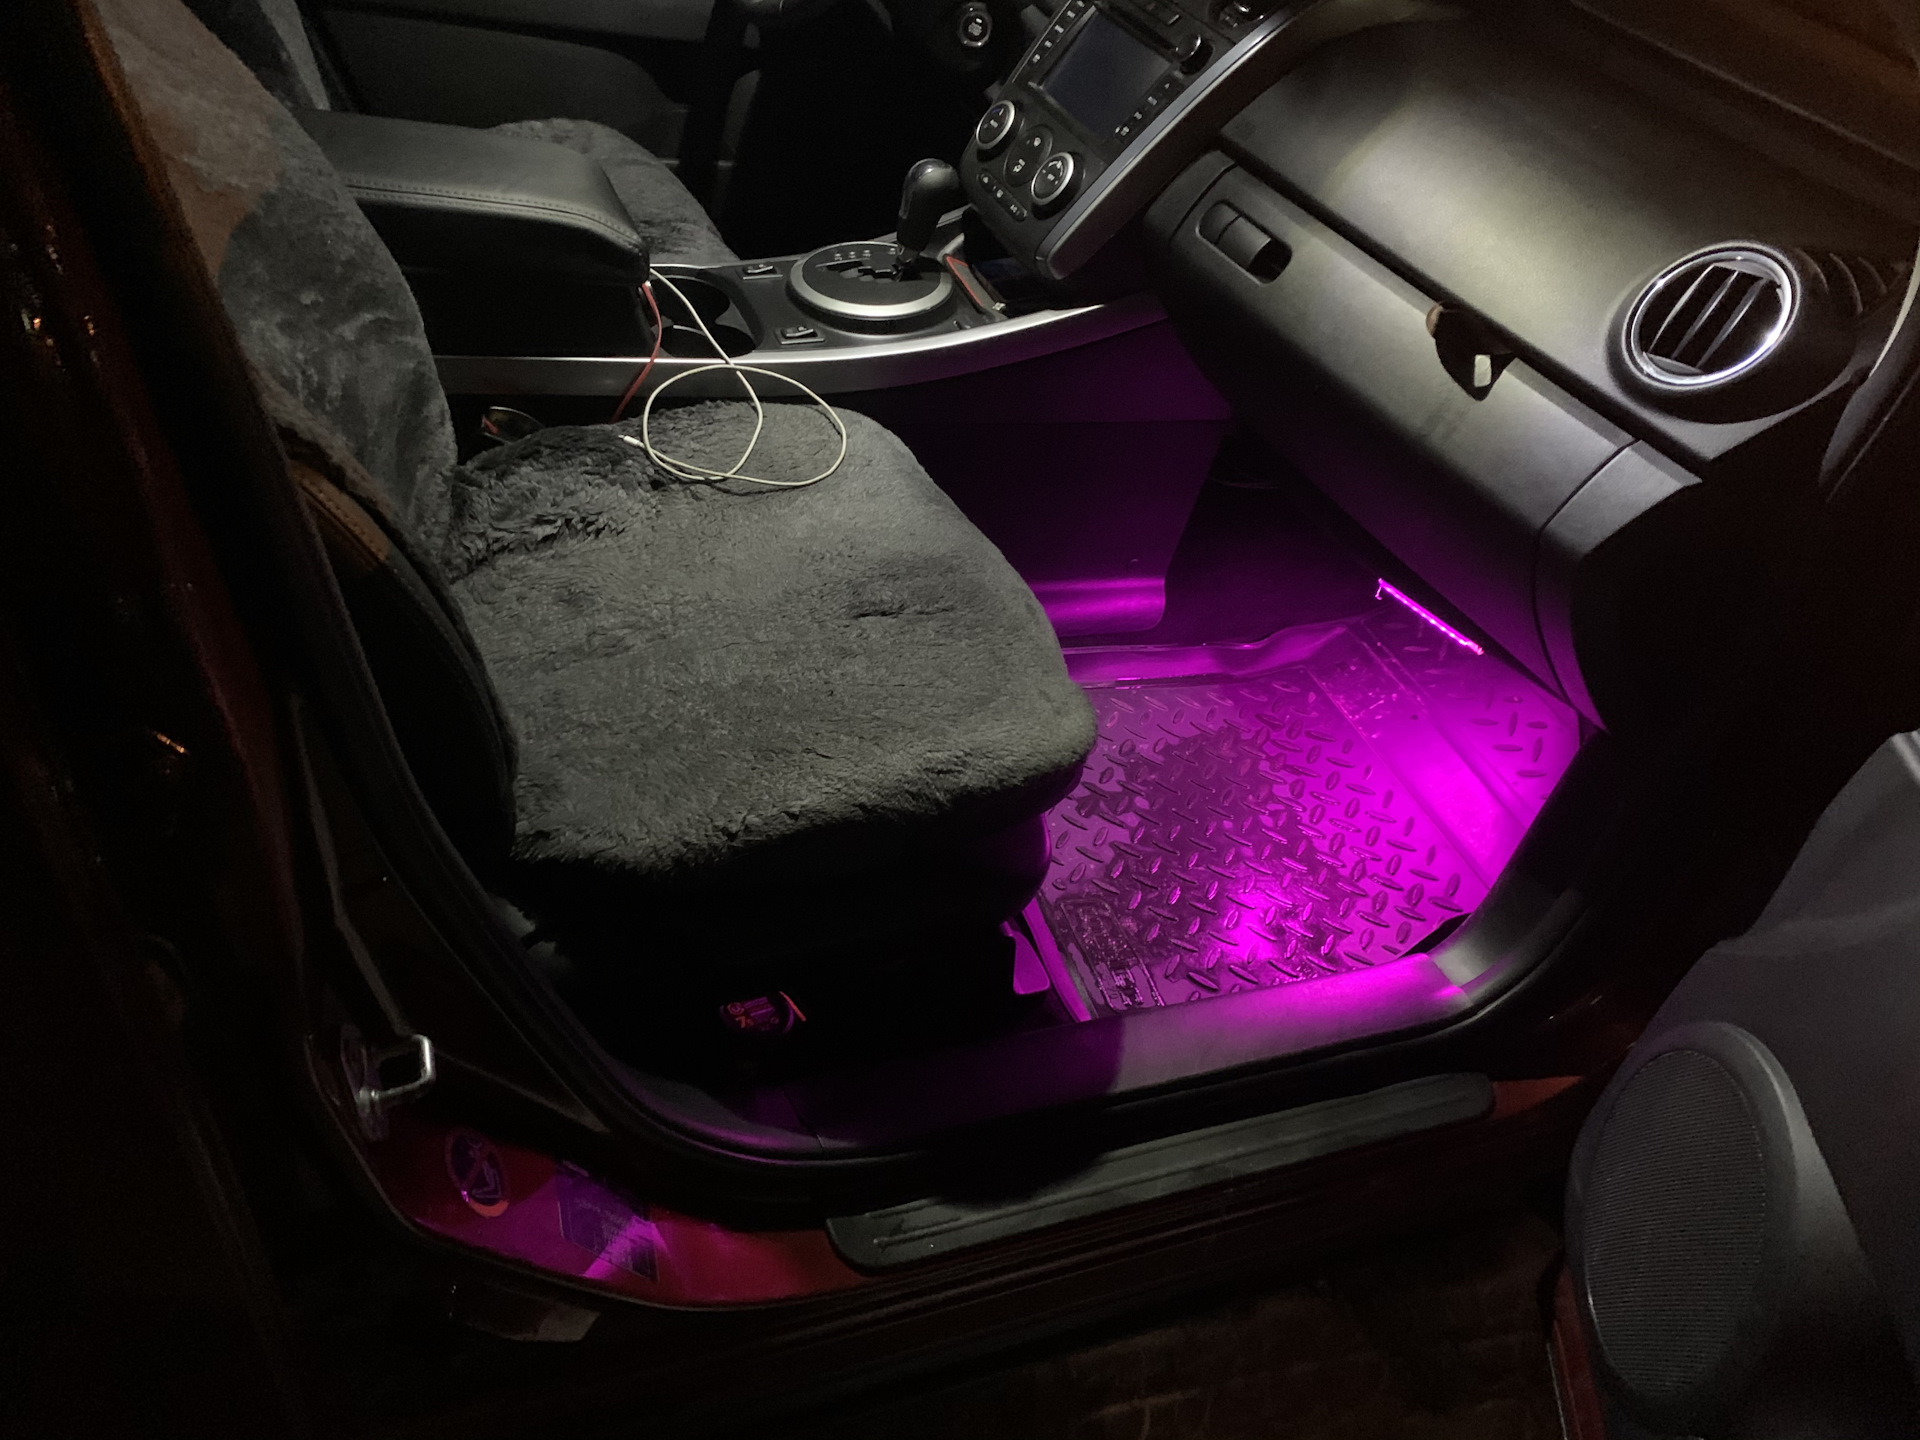 Подсветка мазда сх5. Мазда СХ 7 подсветка ног. Подсветка ног Mazda CX-5. Подсветка ног авто Mazda CX 5. Подсветка салона Мазда сх7.